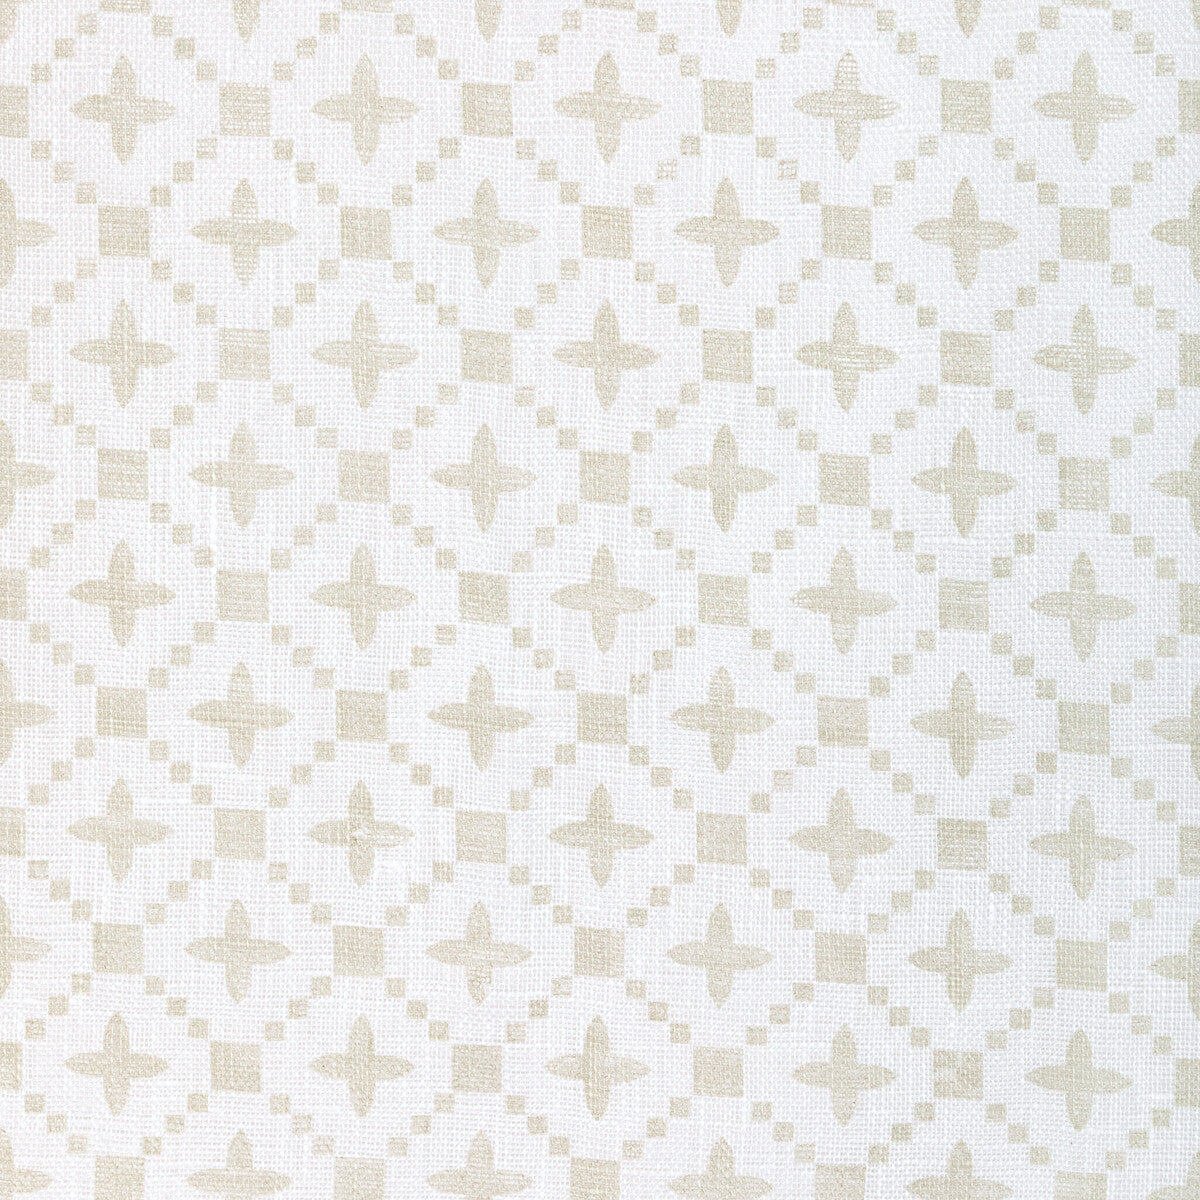 Kravet Basics fabric in 4945-161 color - pattern 4945.161.0 - by Kravet Basics